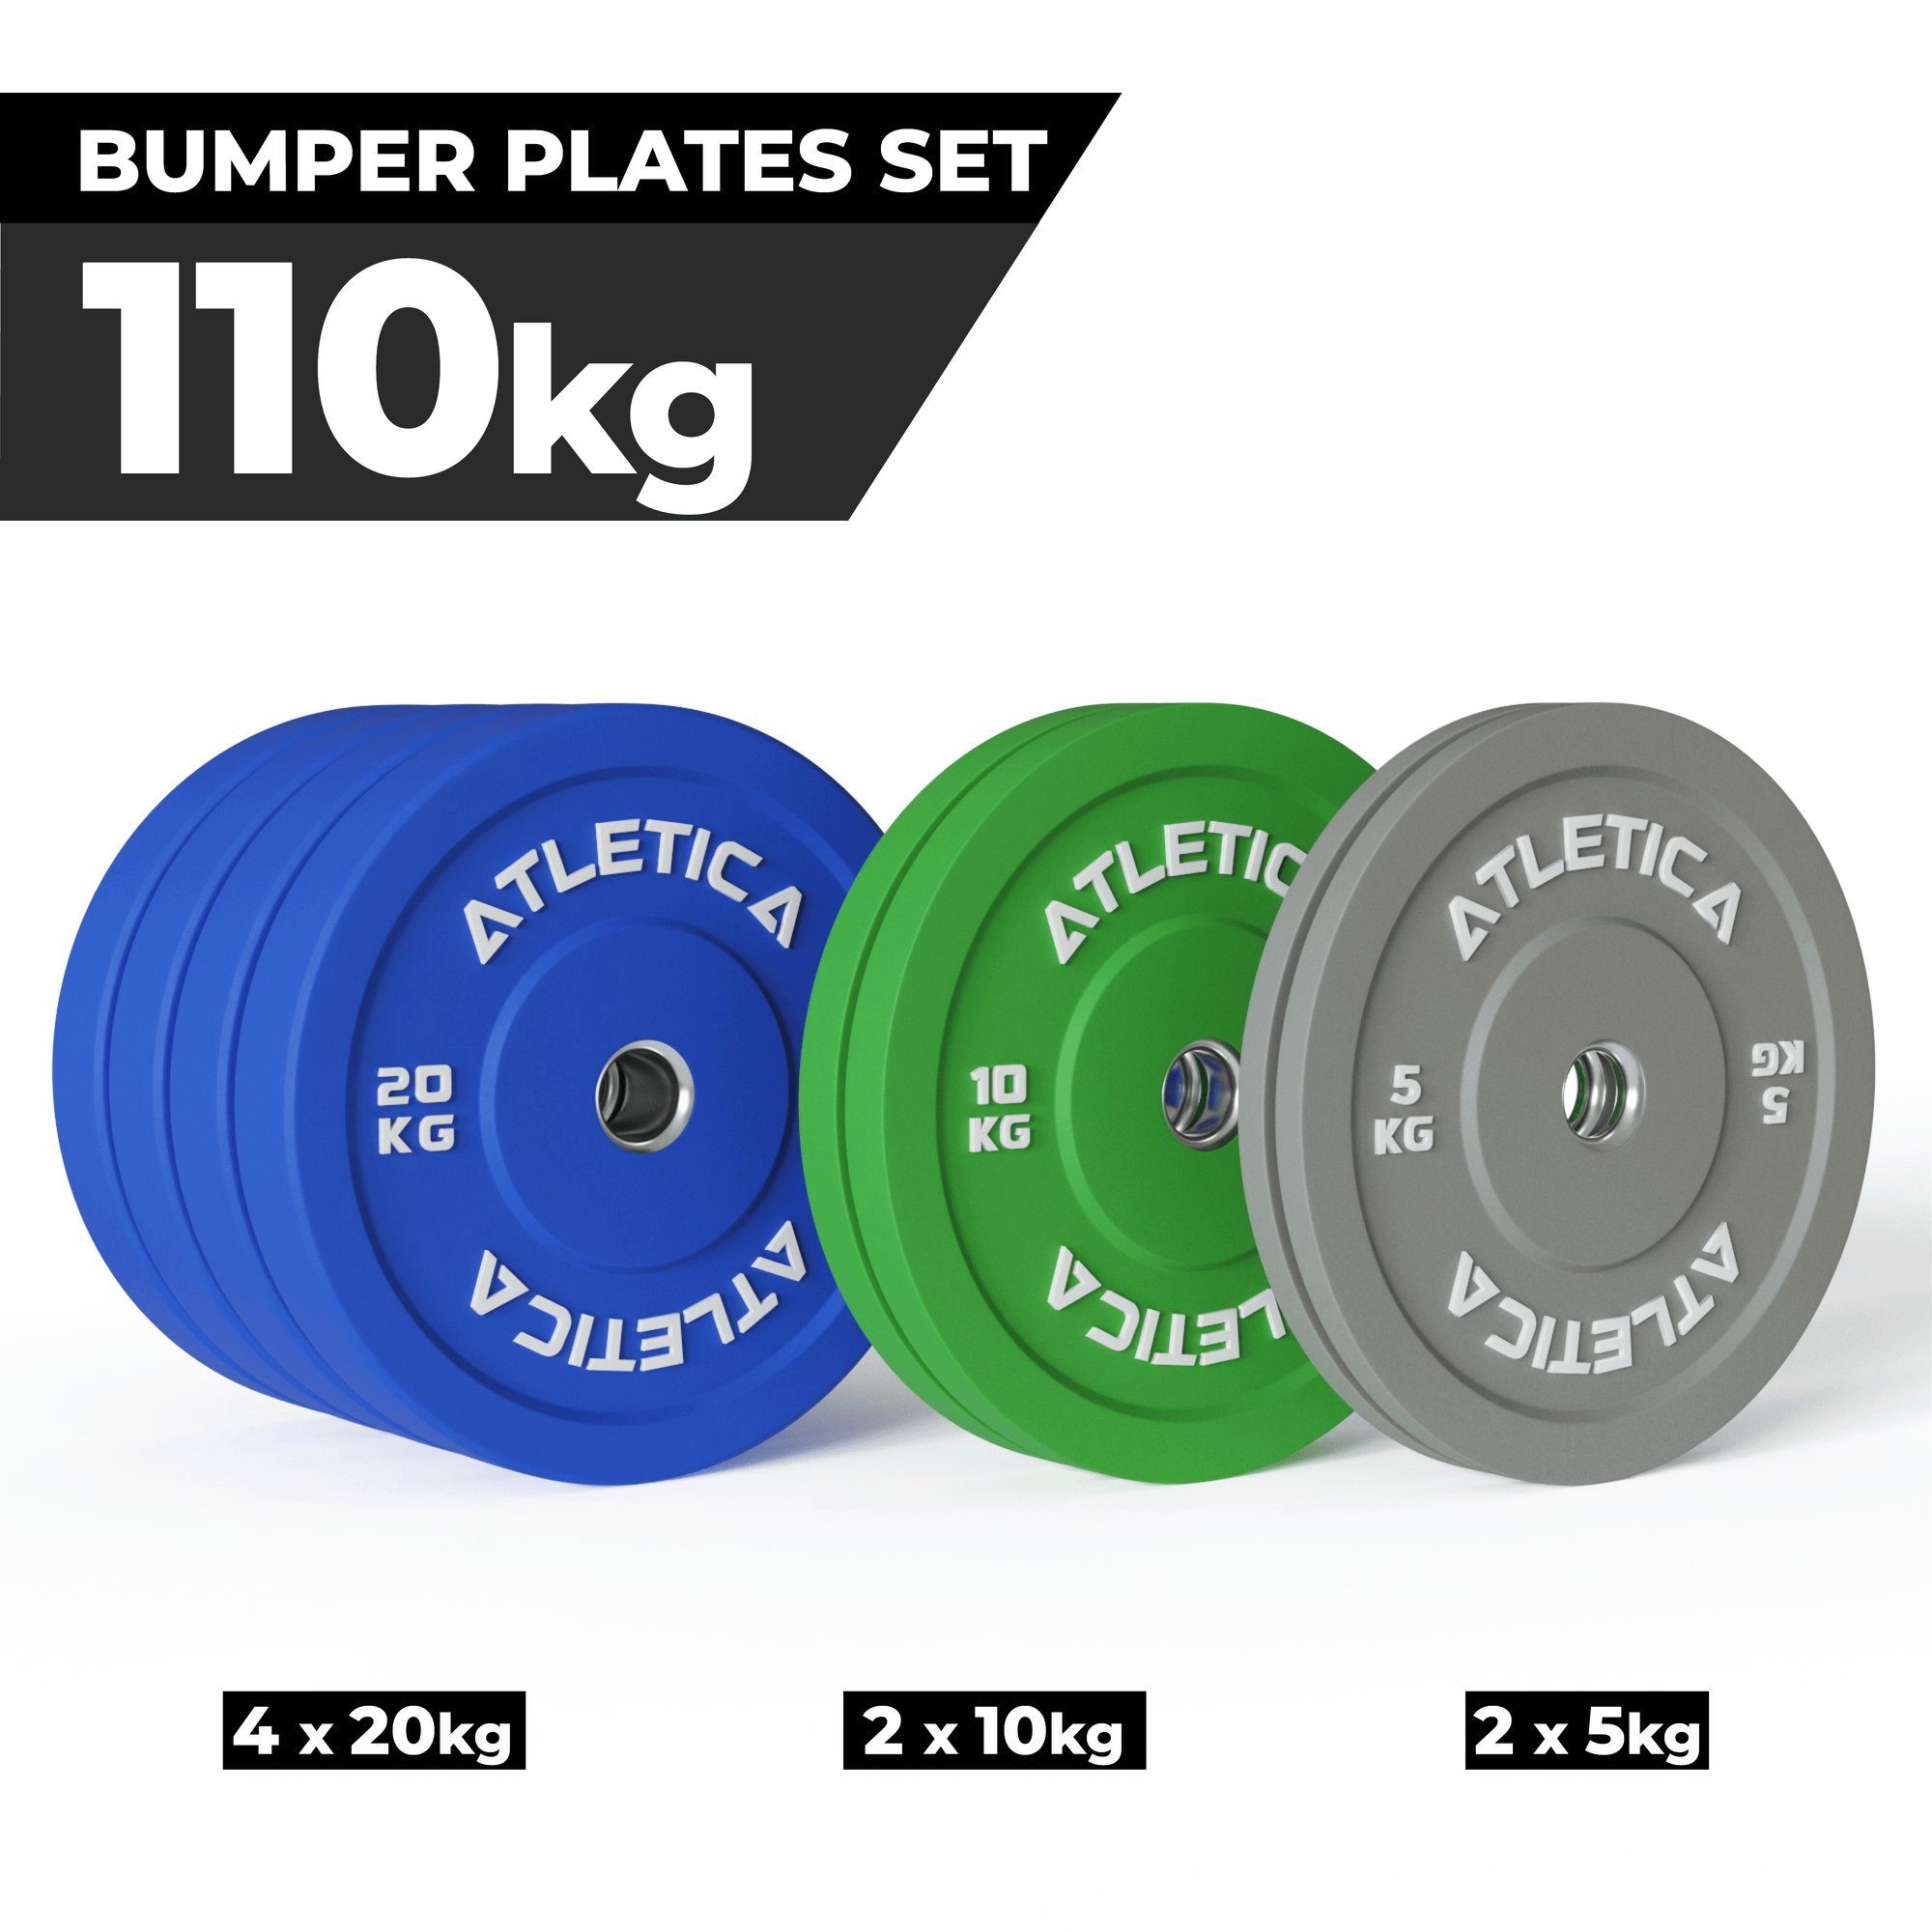 Bumper kg kg Plates Color aus 20 110kg 2x Set kg ∣ ∣ 4x 10 ∣ ATLETICA Hantelscheiben 5 2x